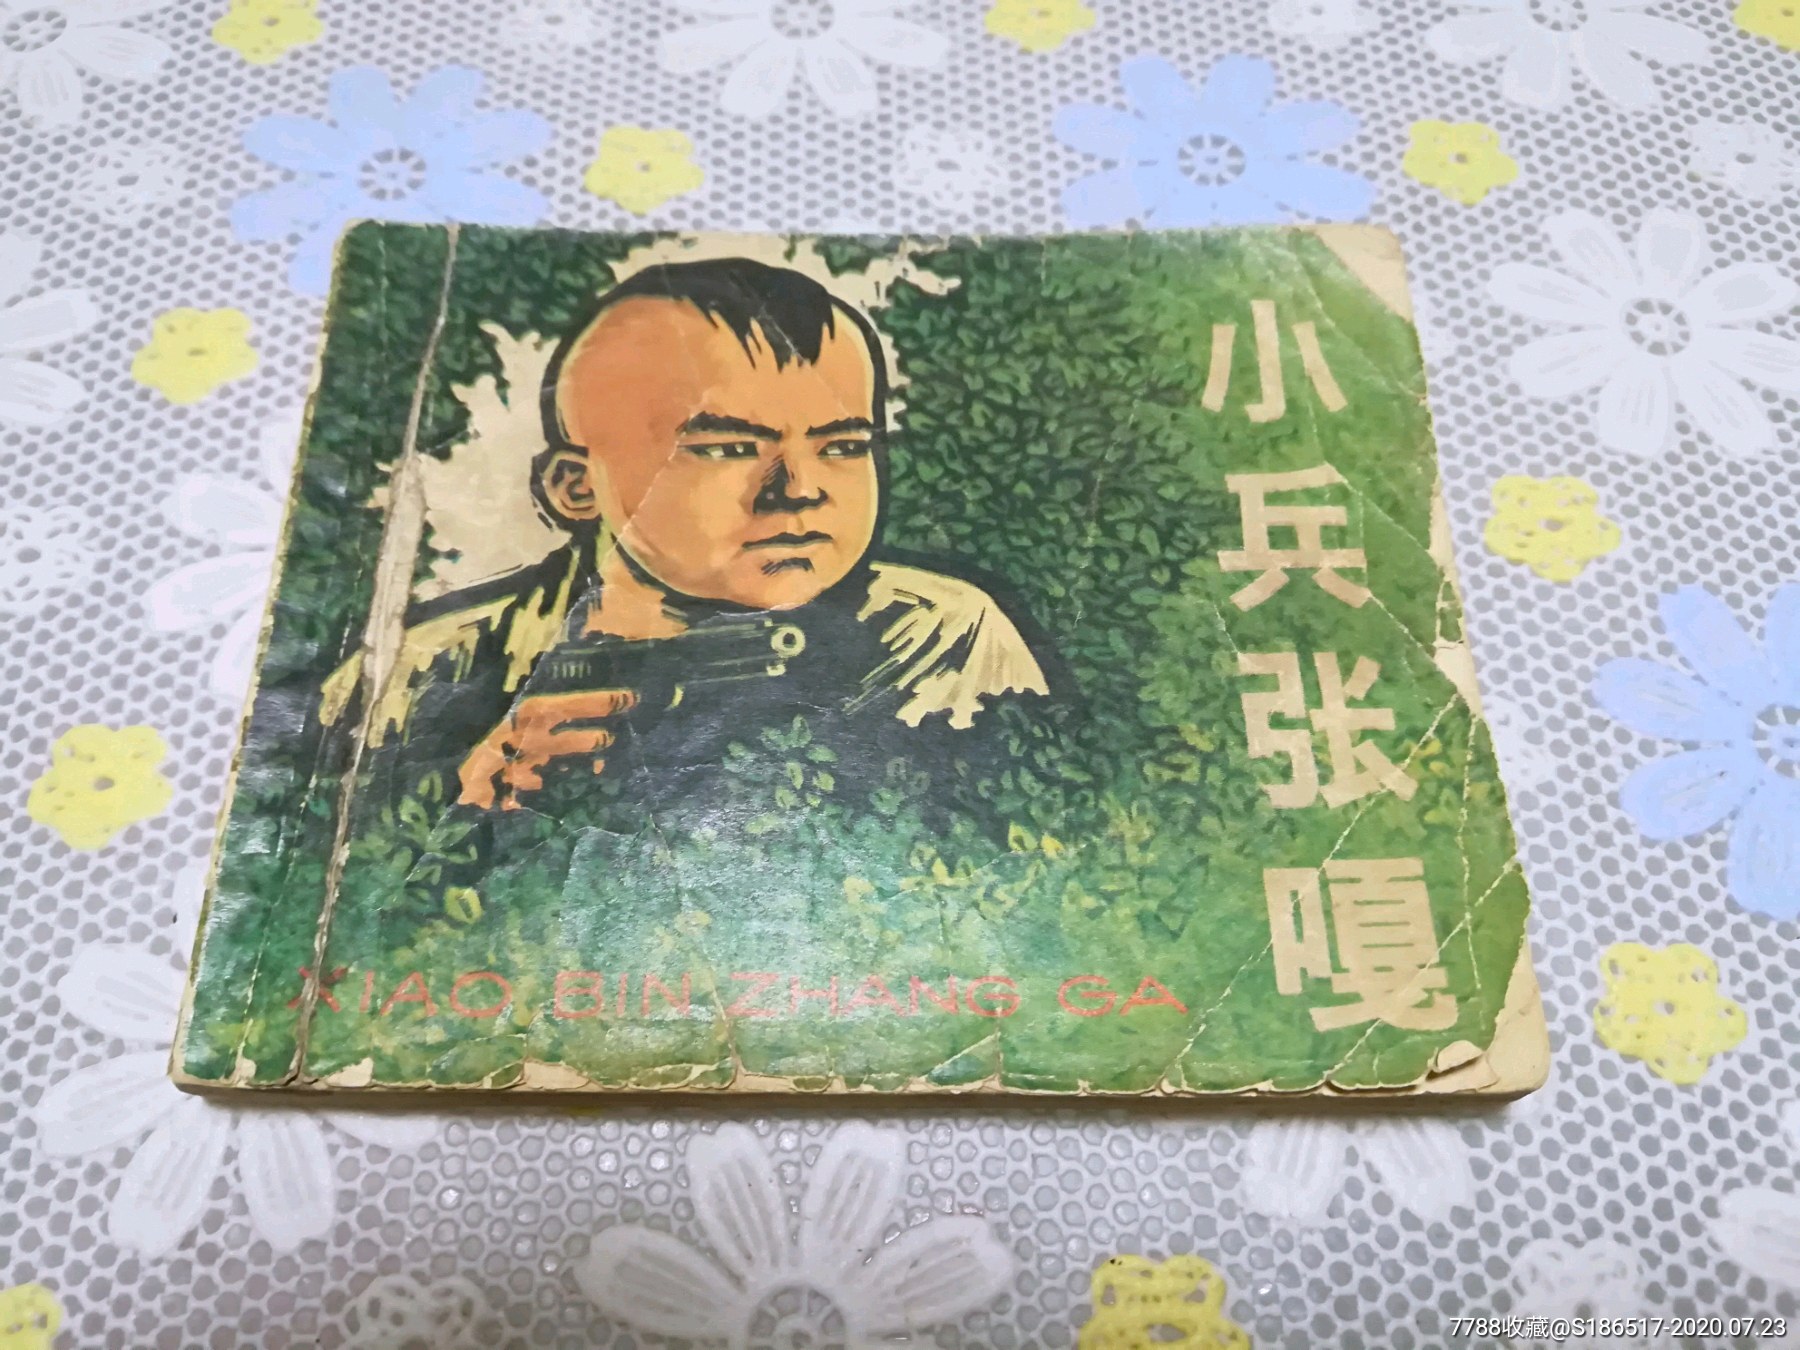 小兵张嘎,连环画/小人书,六十年代(20世纪),绘画版连环画,60开,现代